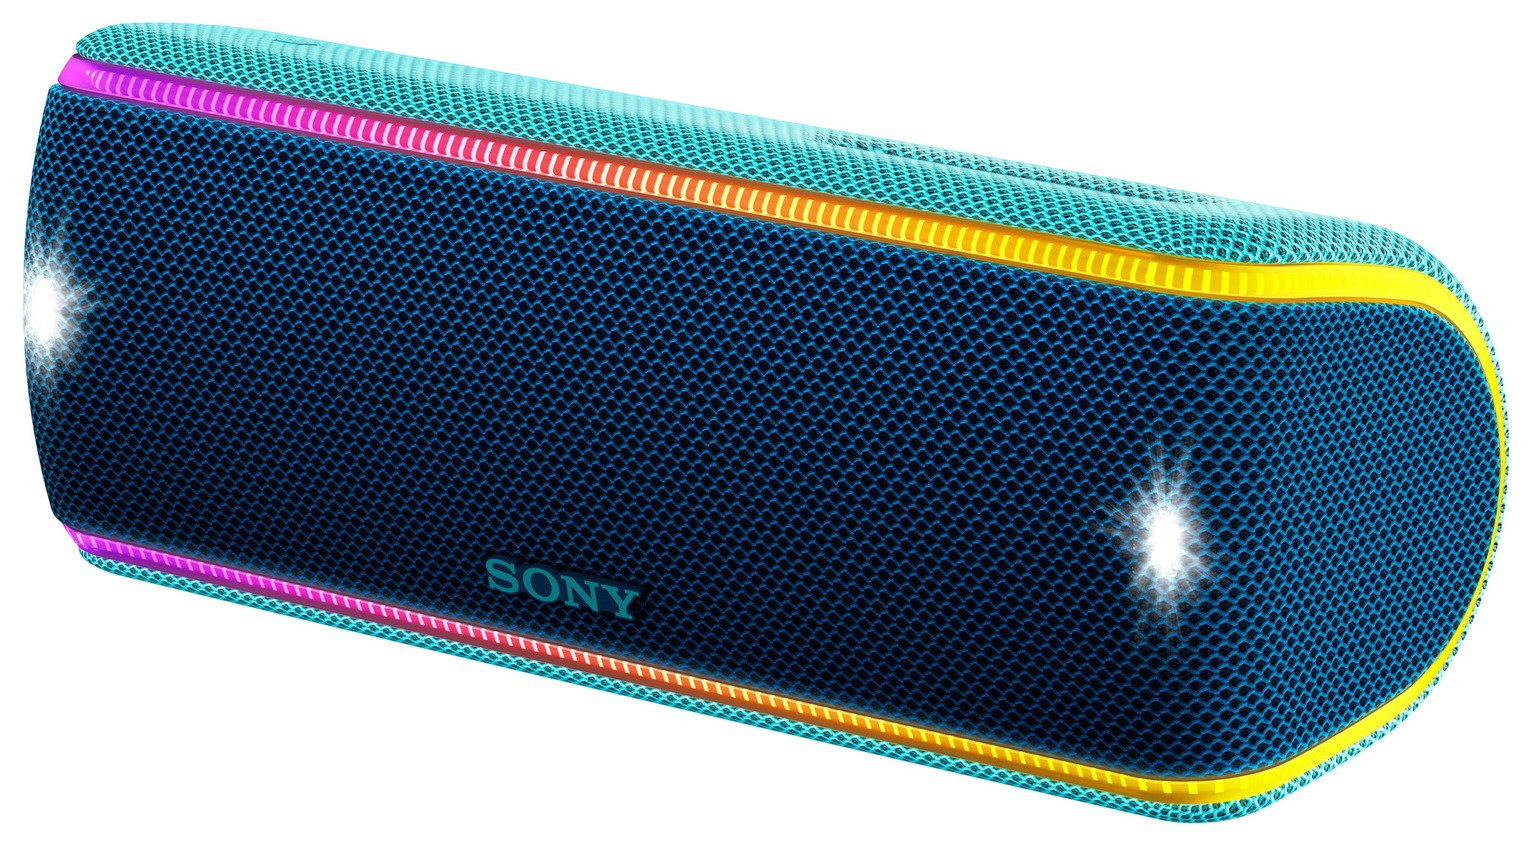 Sony SRS-XB31 Wireless Speaker - Blue Reviews